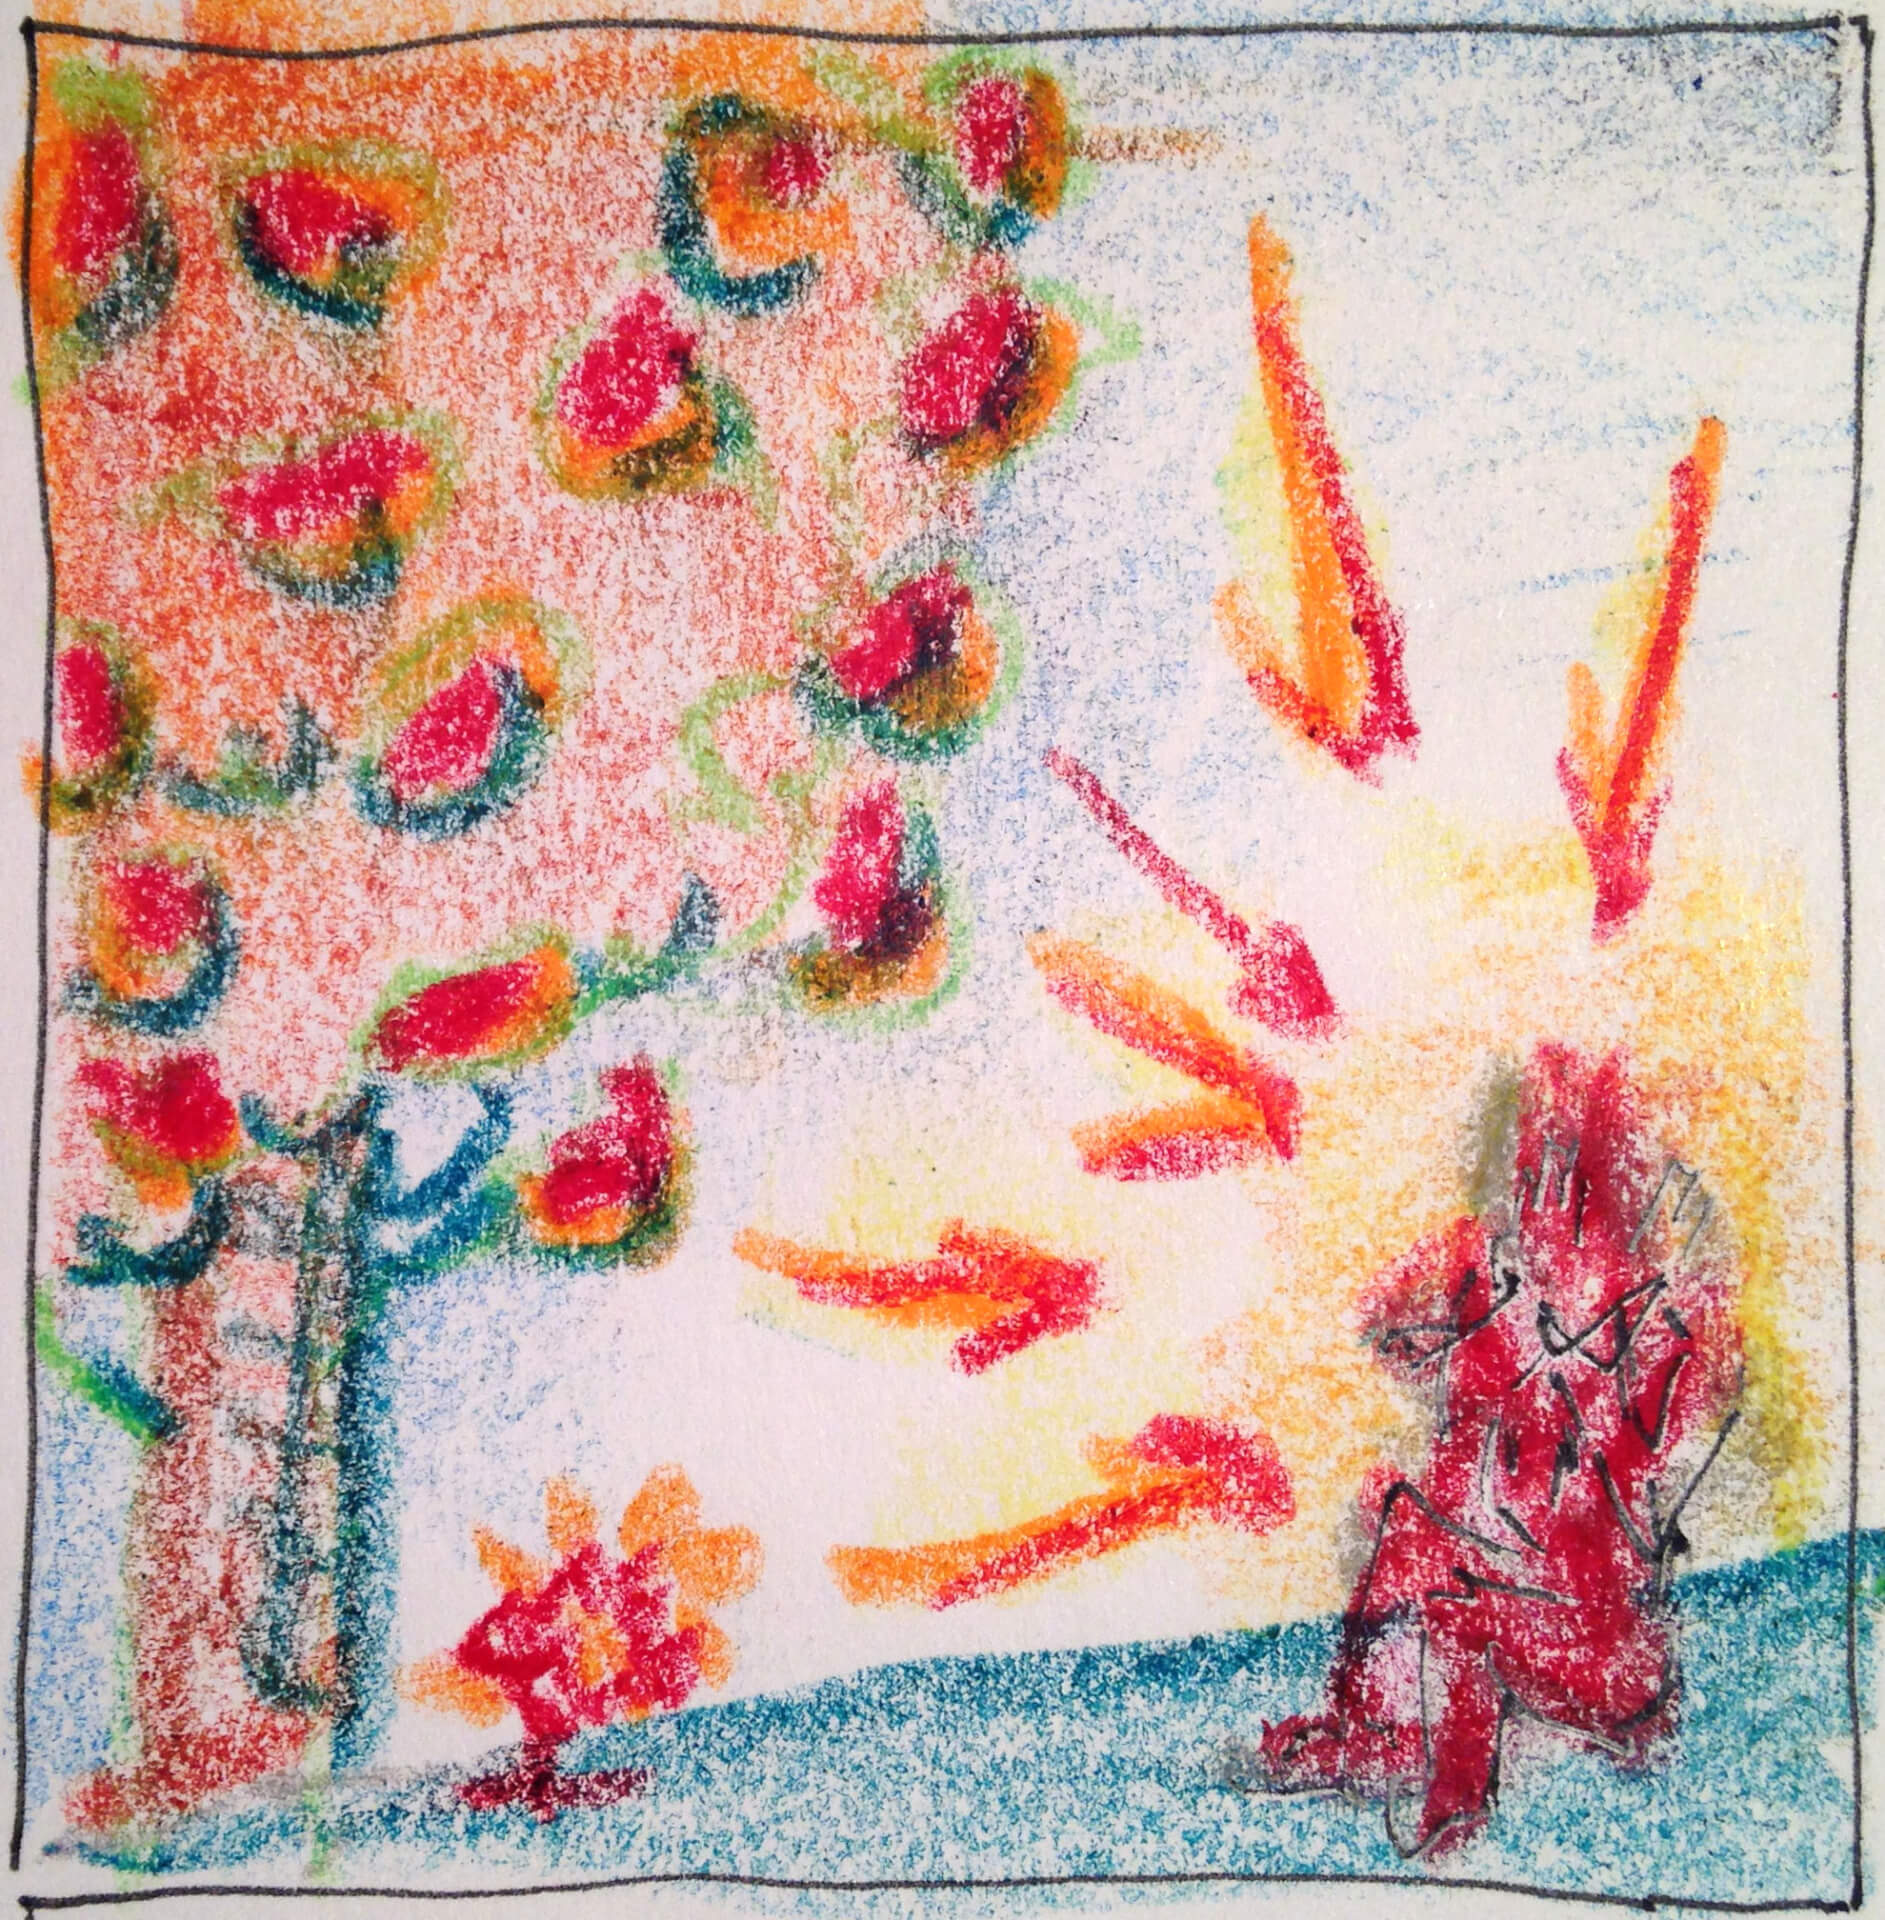 Kinderzeichnung einer roten anthropomorphen Figur, die unter einem Obstbaum sitzt, mit einer Reihe orangefarbener und gelber Pollenangriffe im Hintergrund.